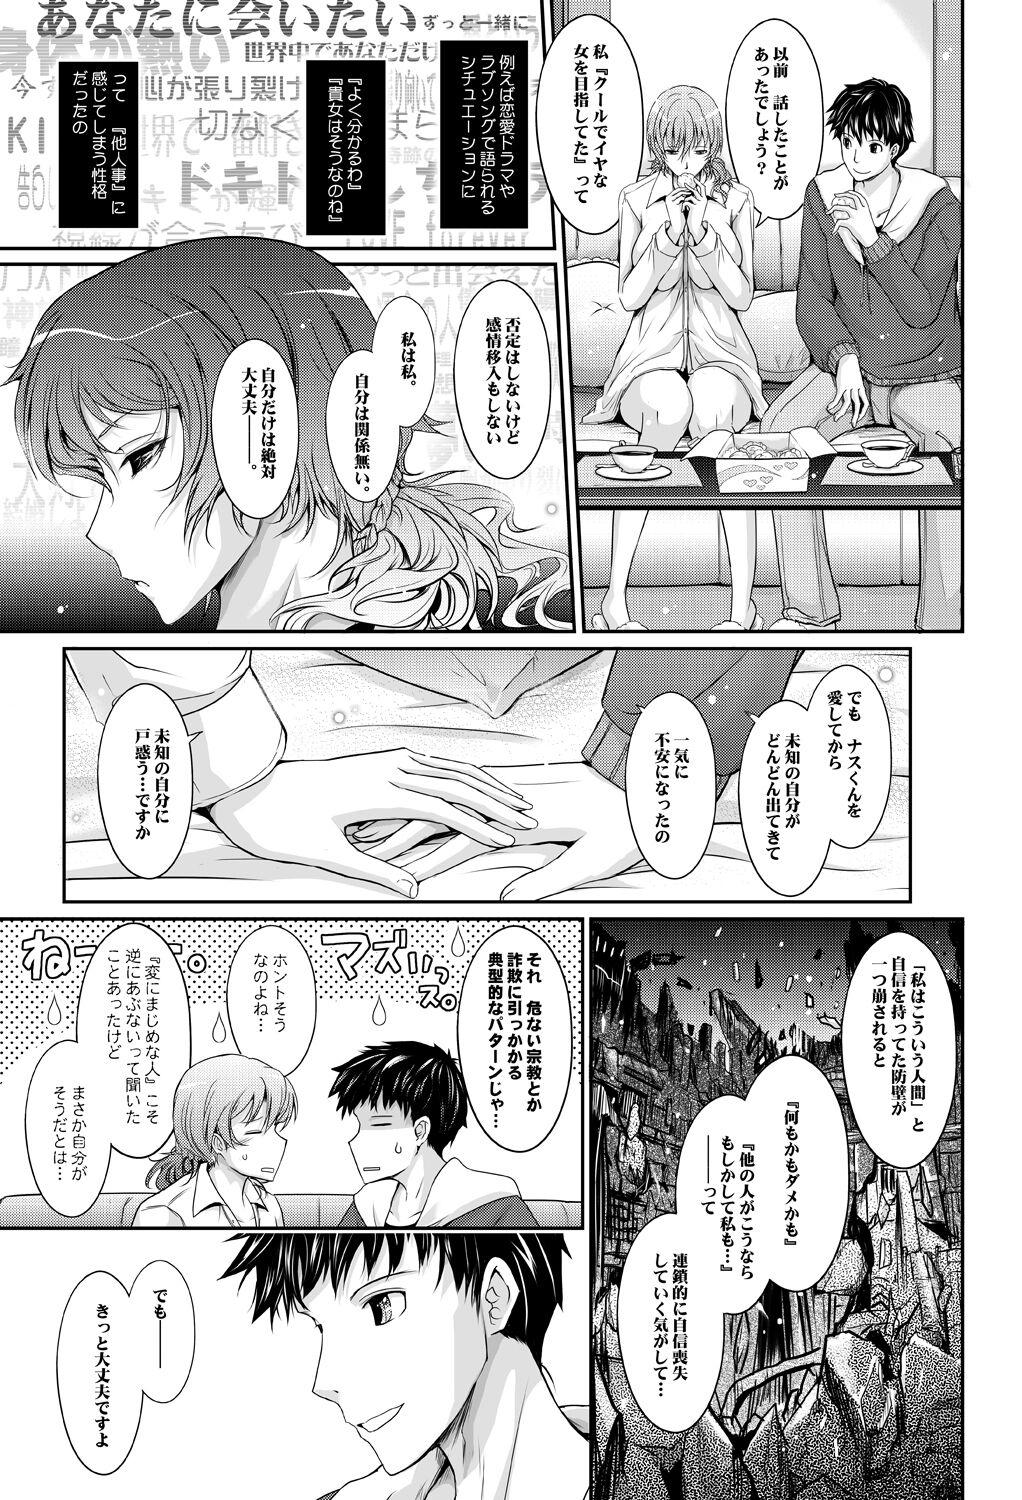 Spying Amaku Iyagaru Kanojo no Chijou Episode 3 - Original Chilena - Page 11